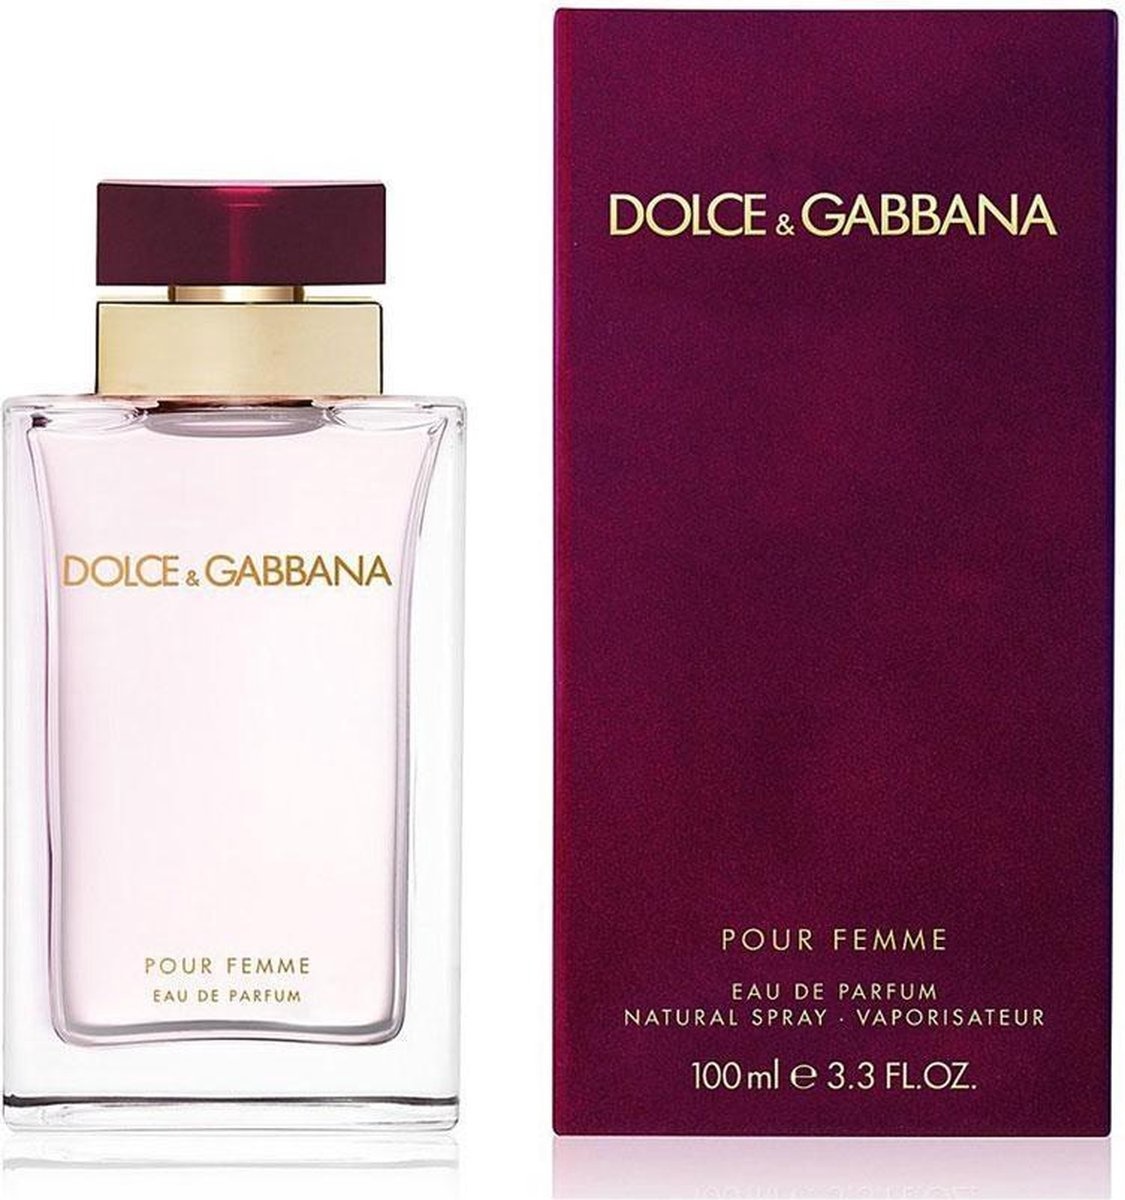 Dolce & Gabbana Pour Femme 100 ml - Eau de Parfum - Parfum Femme